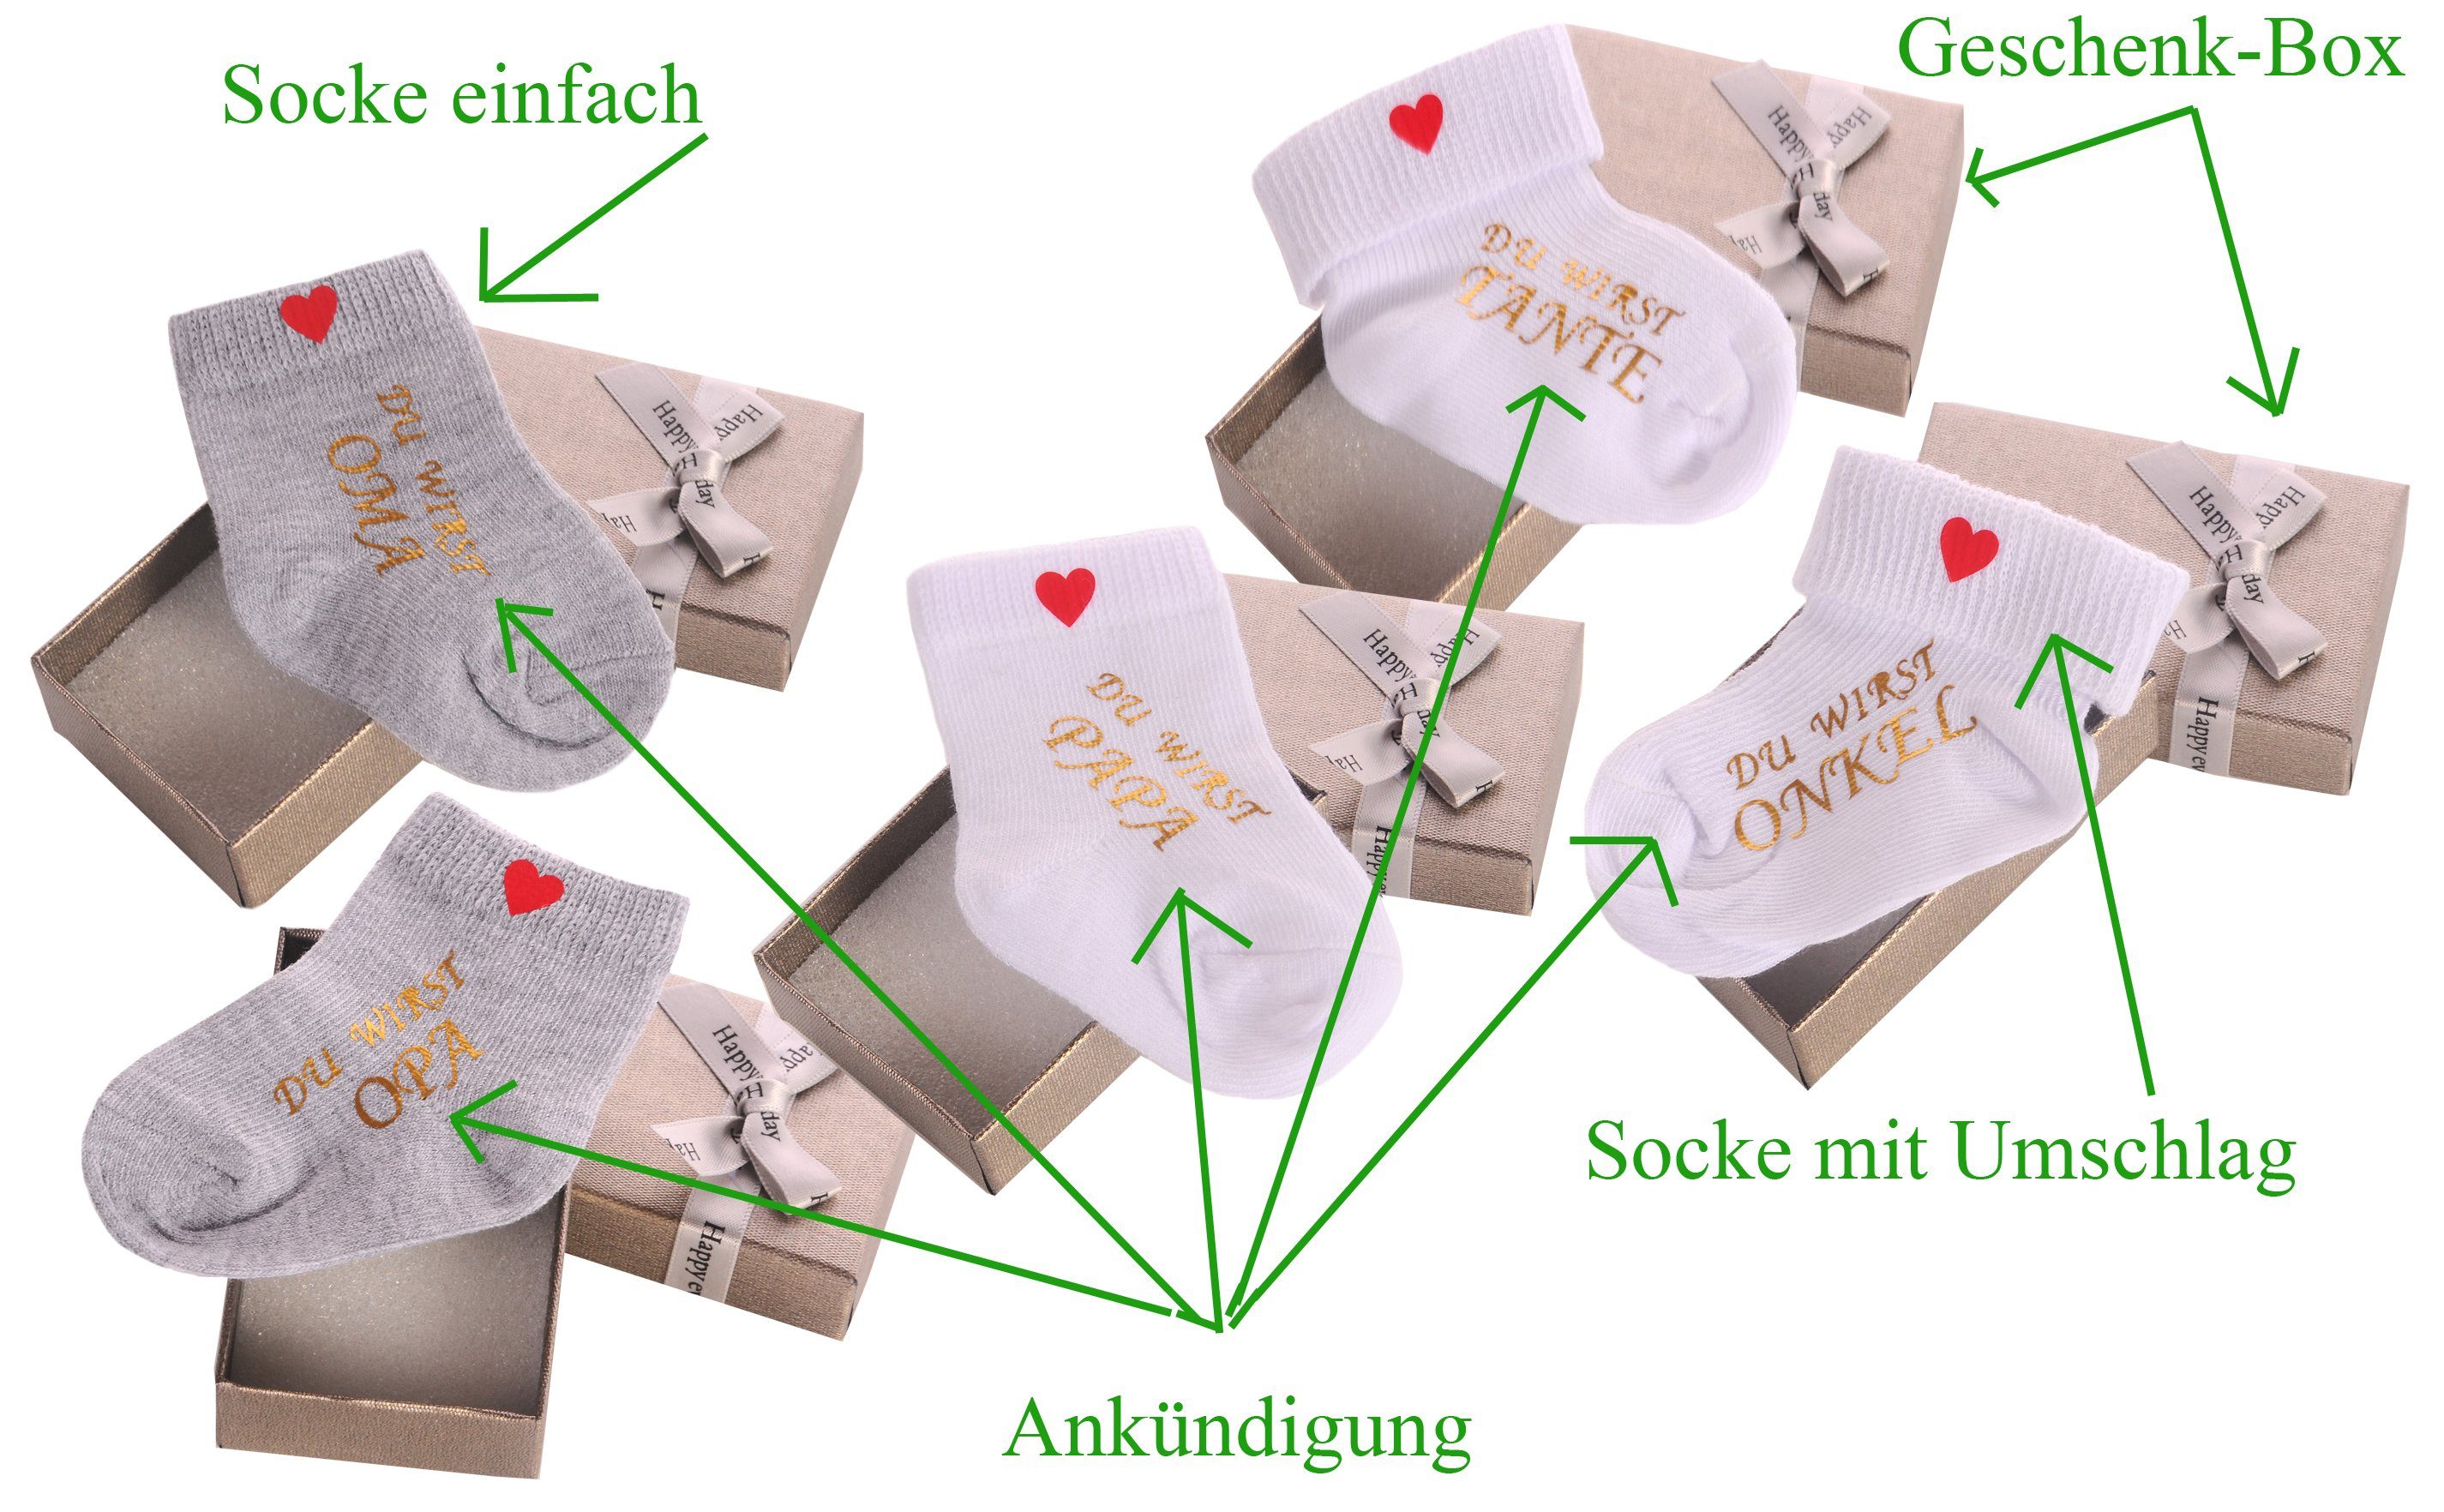 Opa Geschenkidee Socke Geschenkbox Oma Neugeborenen-Geschenkset und Opa einfach) Papa / mit Weiß Bortini (Socke Ankündigung La